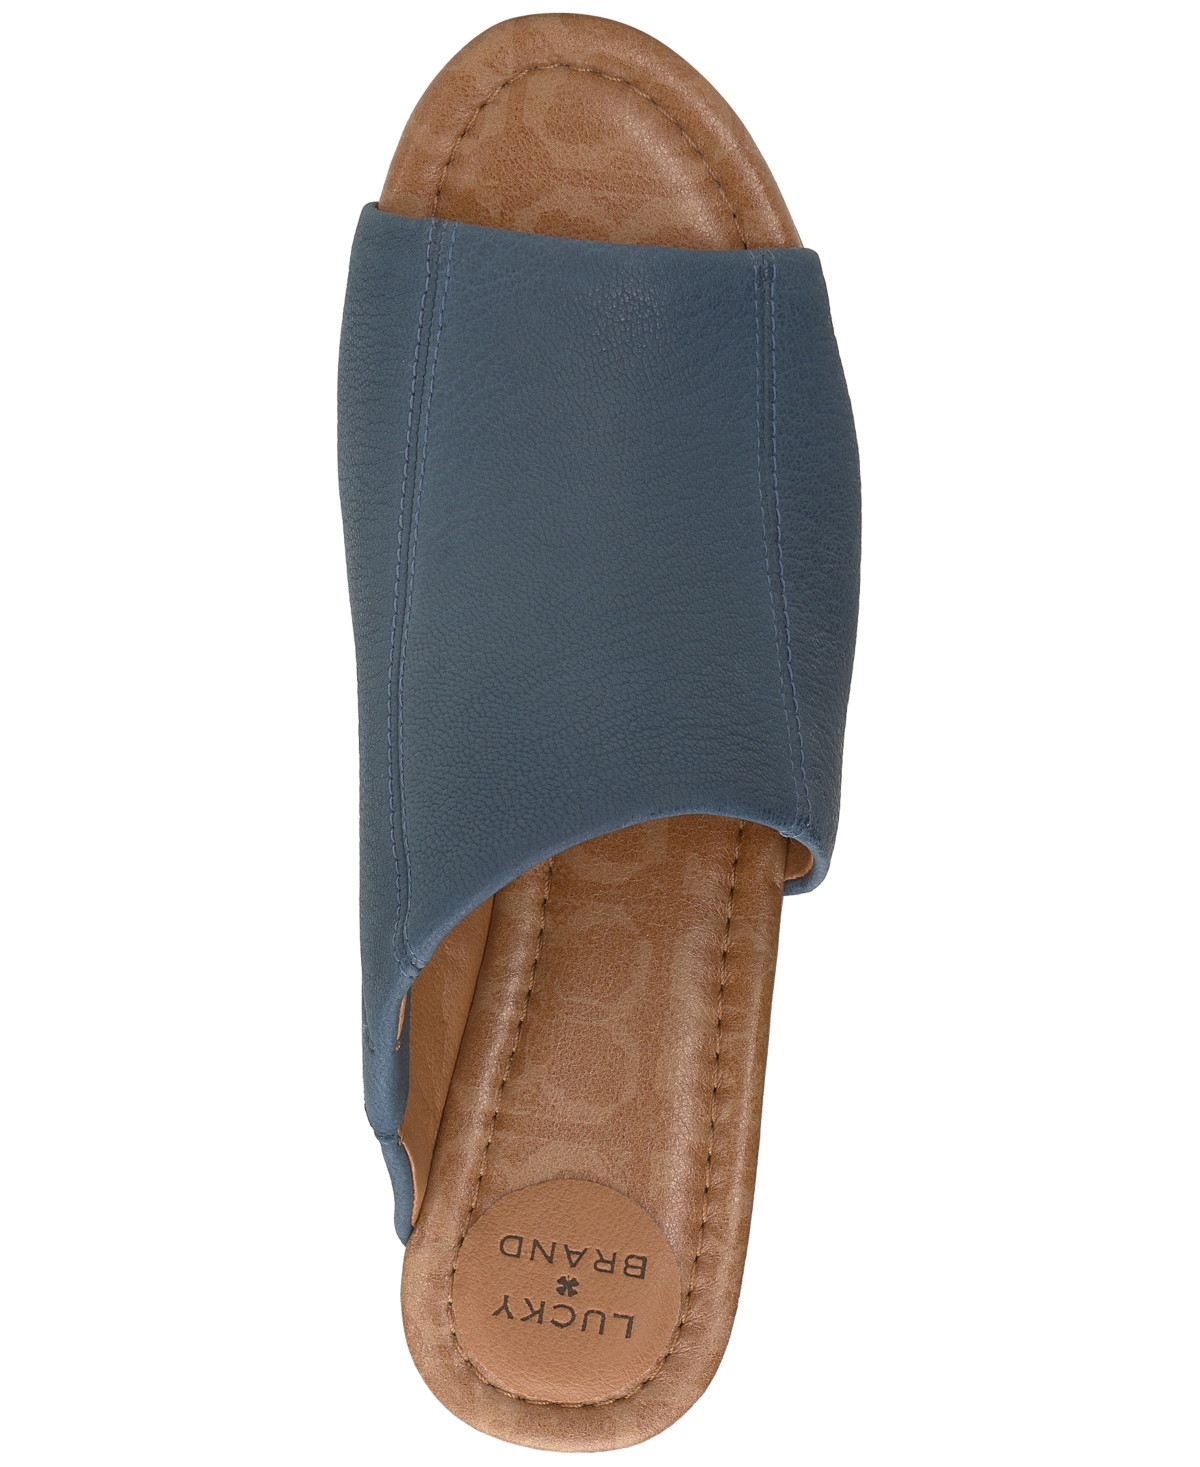 Shop Lucky Brand Women's Malenka Slip-on Wedge Sandals In Light Blue Leather